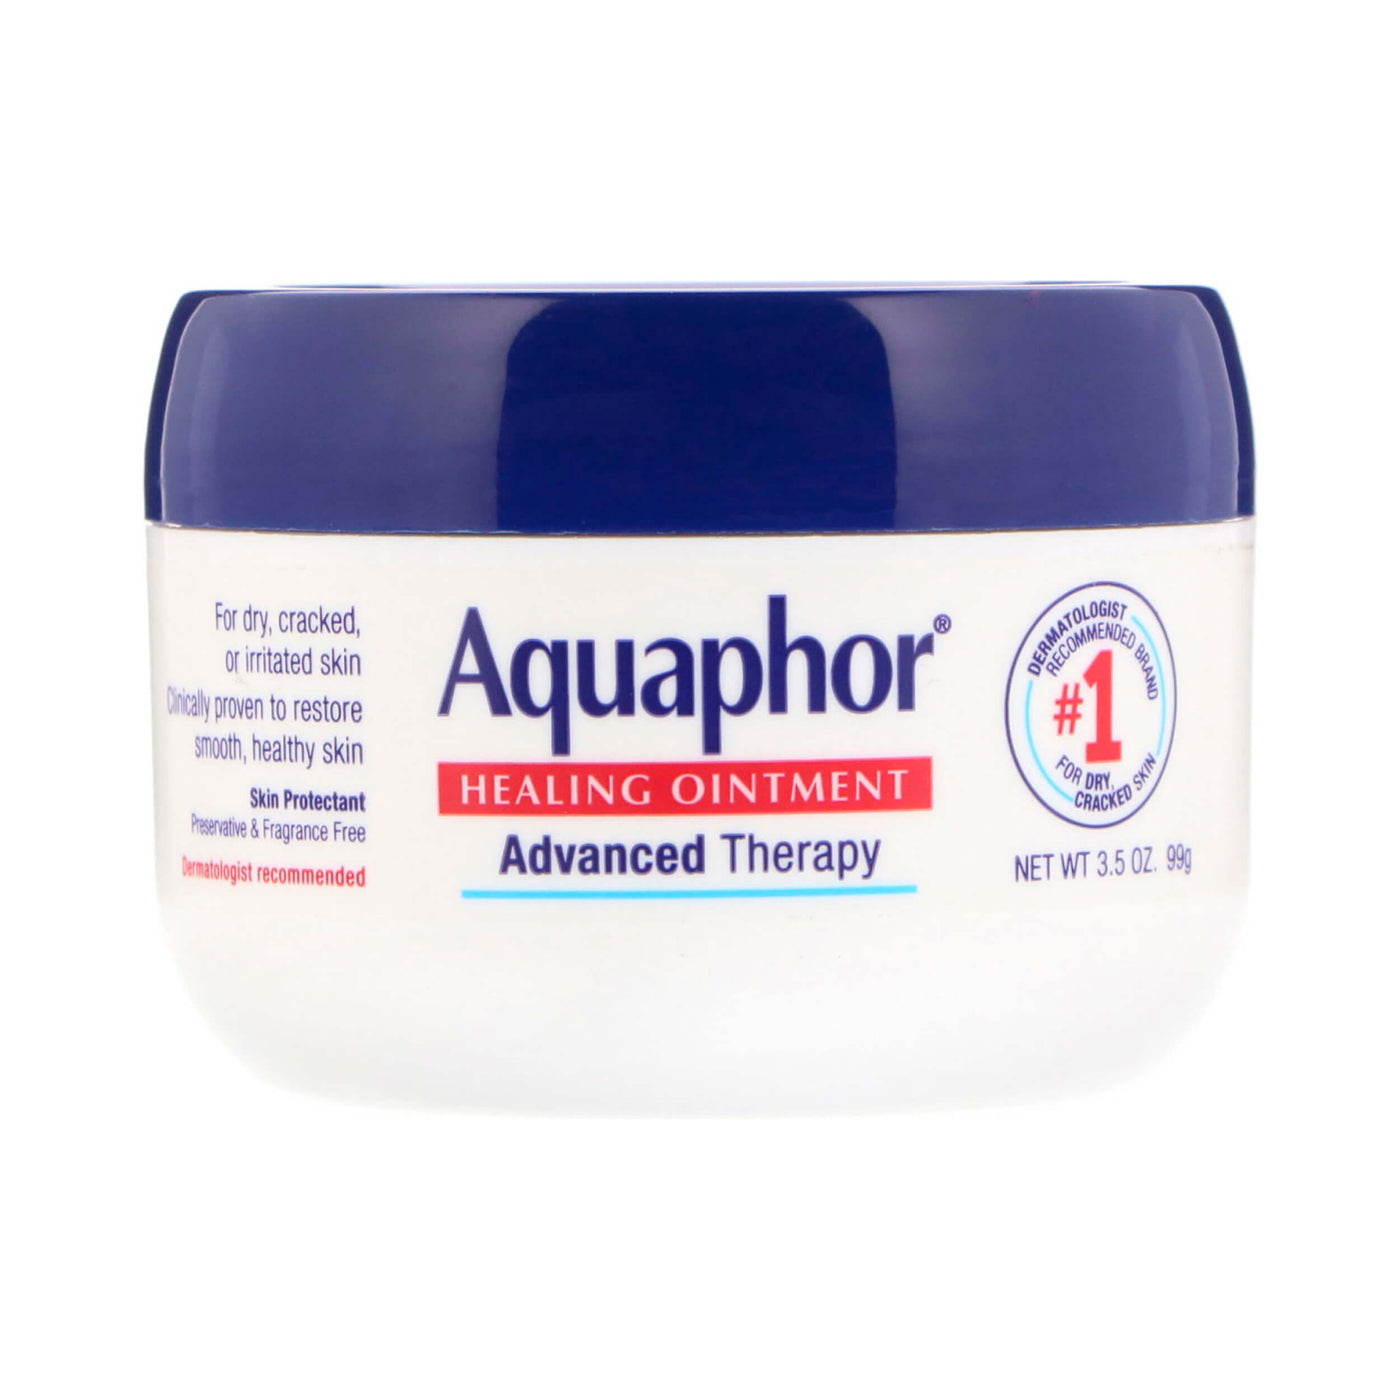 Buy Aquaphor Healing Ointment in Australia - MYQT.com.au